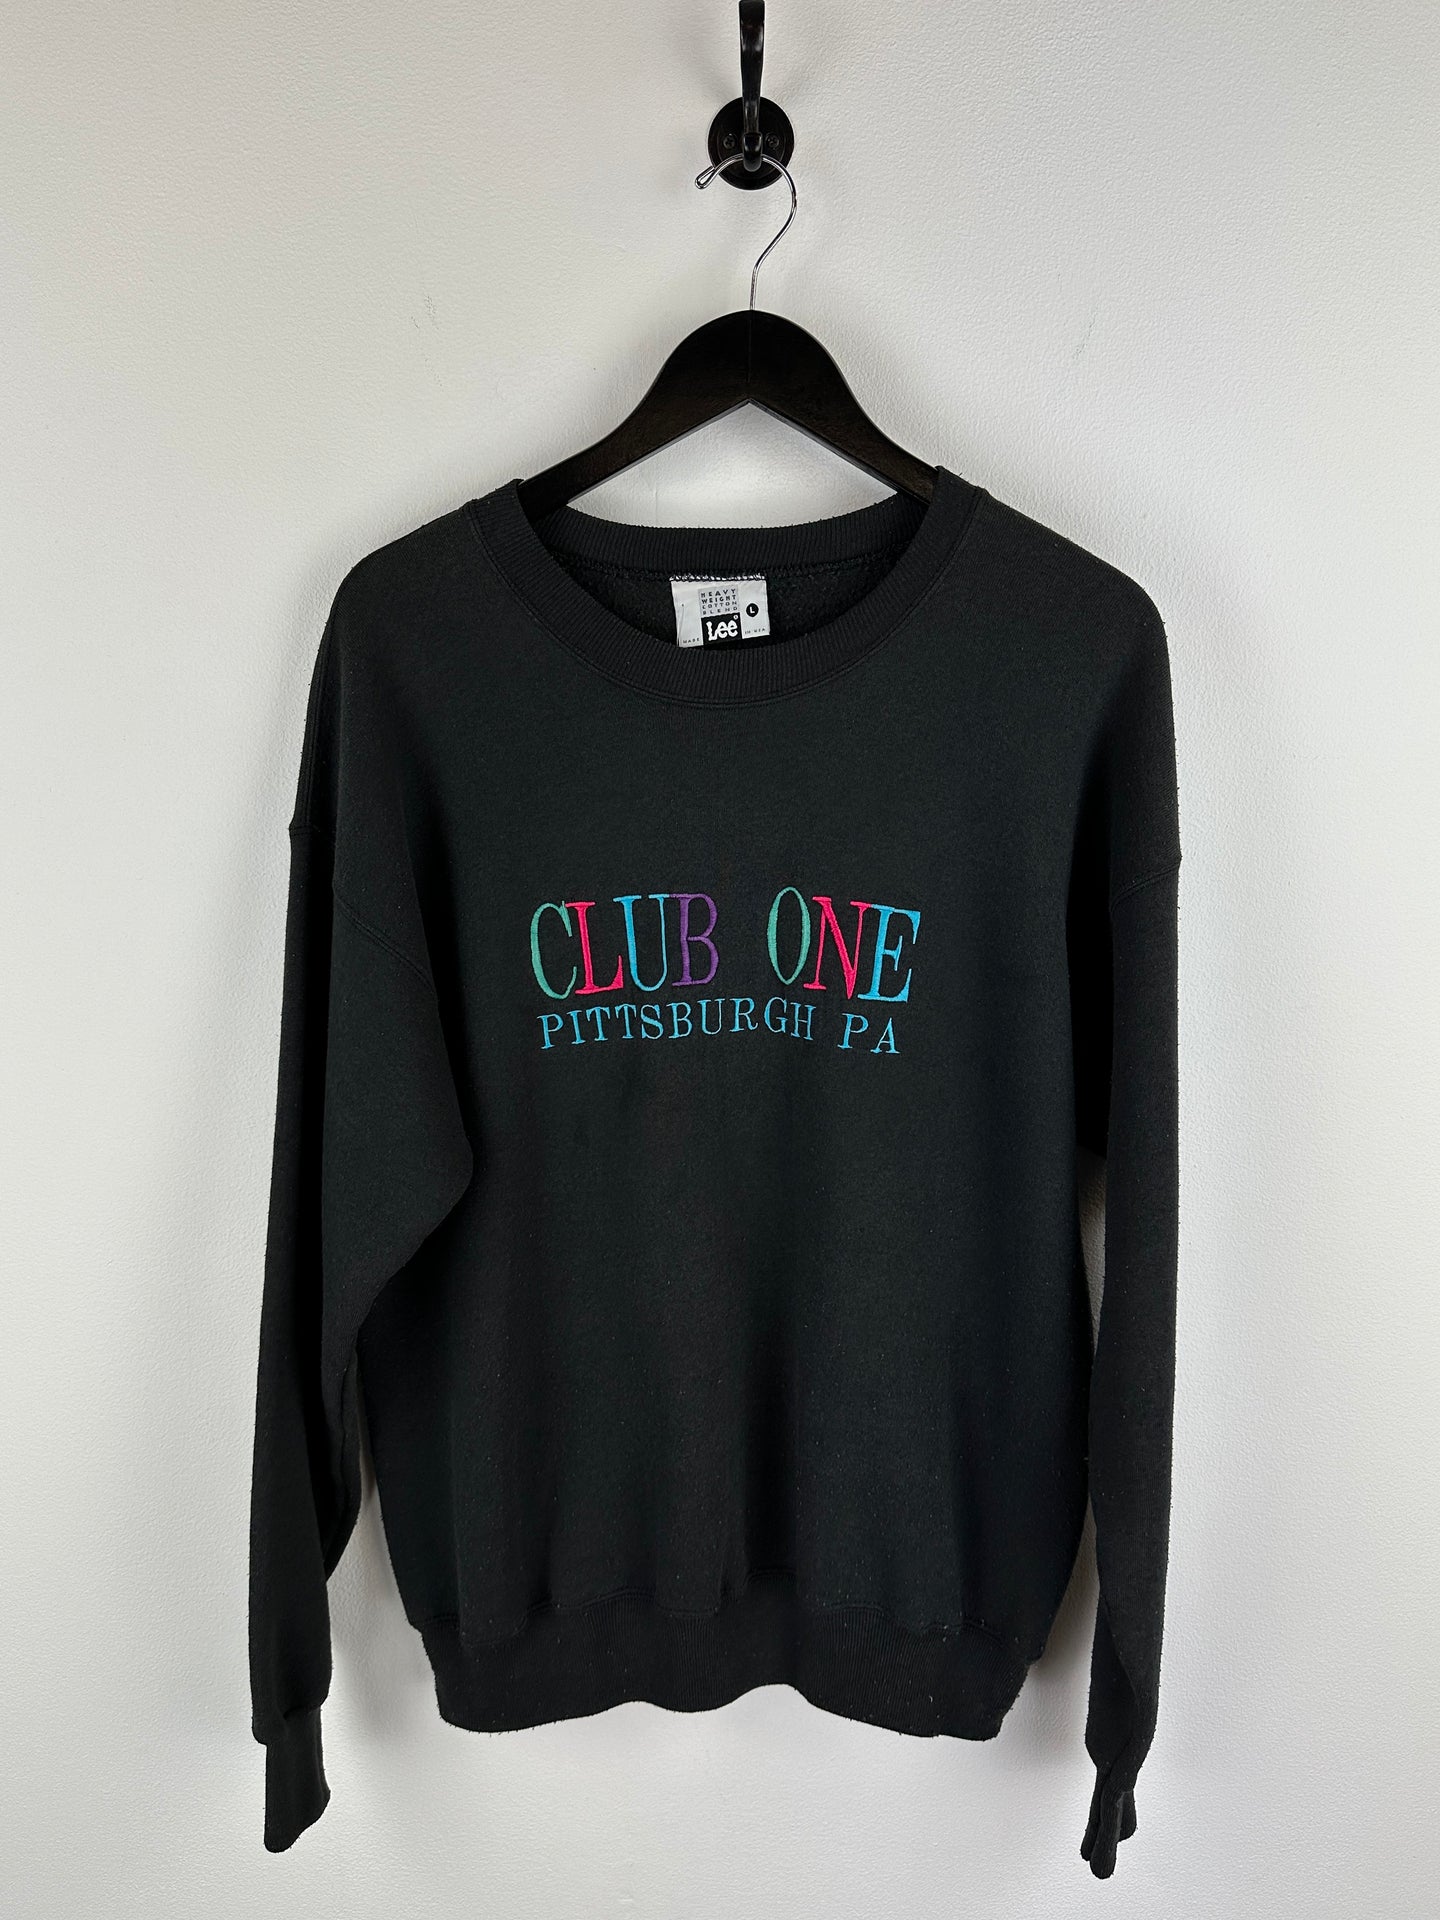 Vintage Club One Pittsburgh Sweatshirt